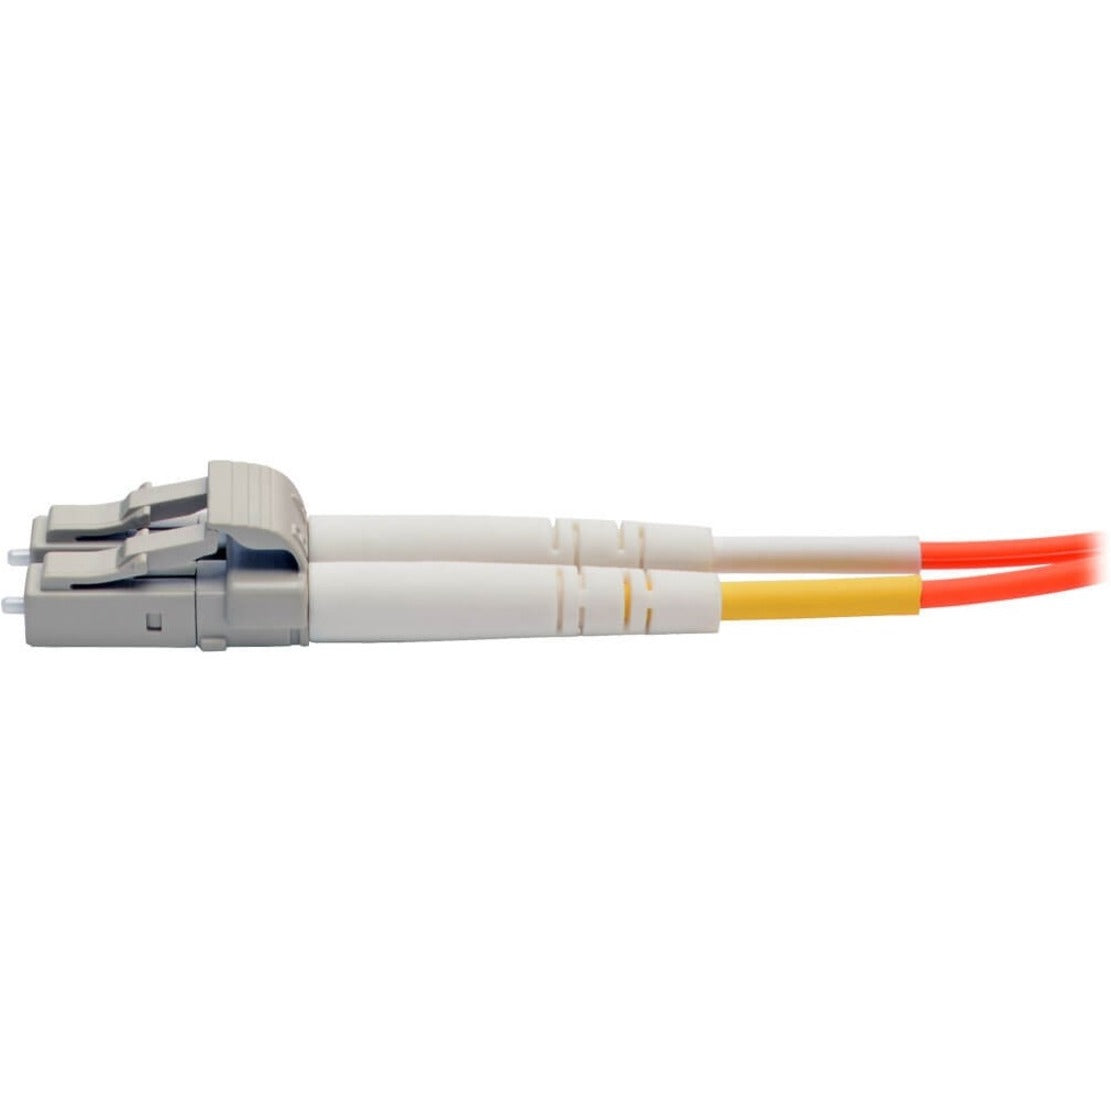 Tripp Lite N318-05M Fiber Optic Duplex Patch Cable, 16.40 ft, Orange, Lifetime Warranty